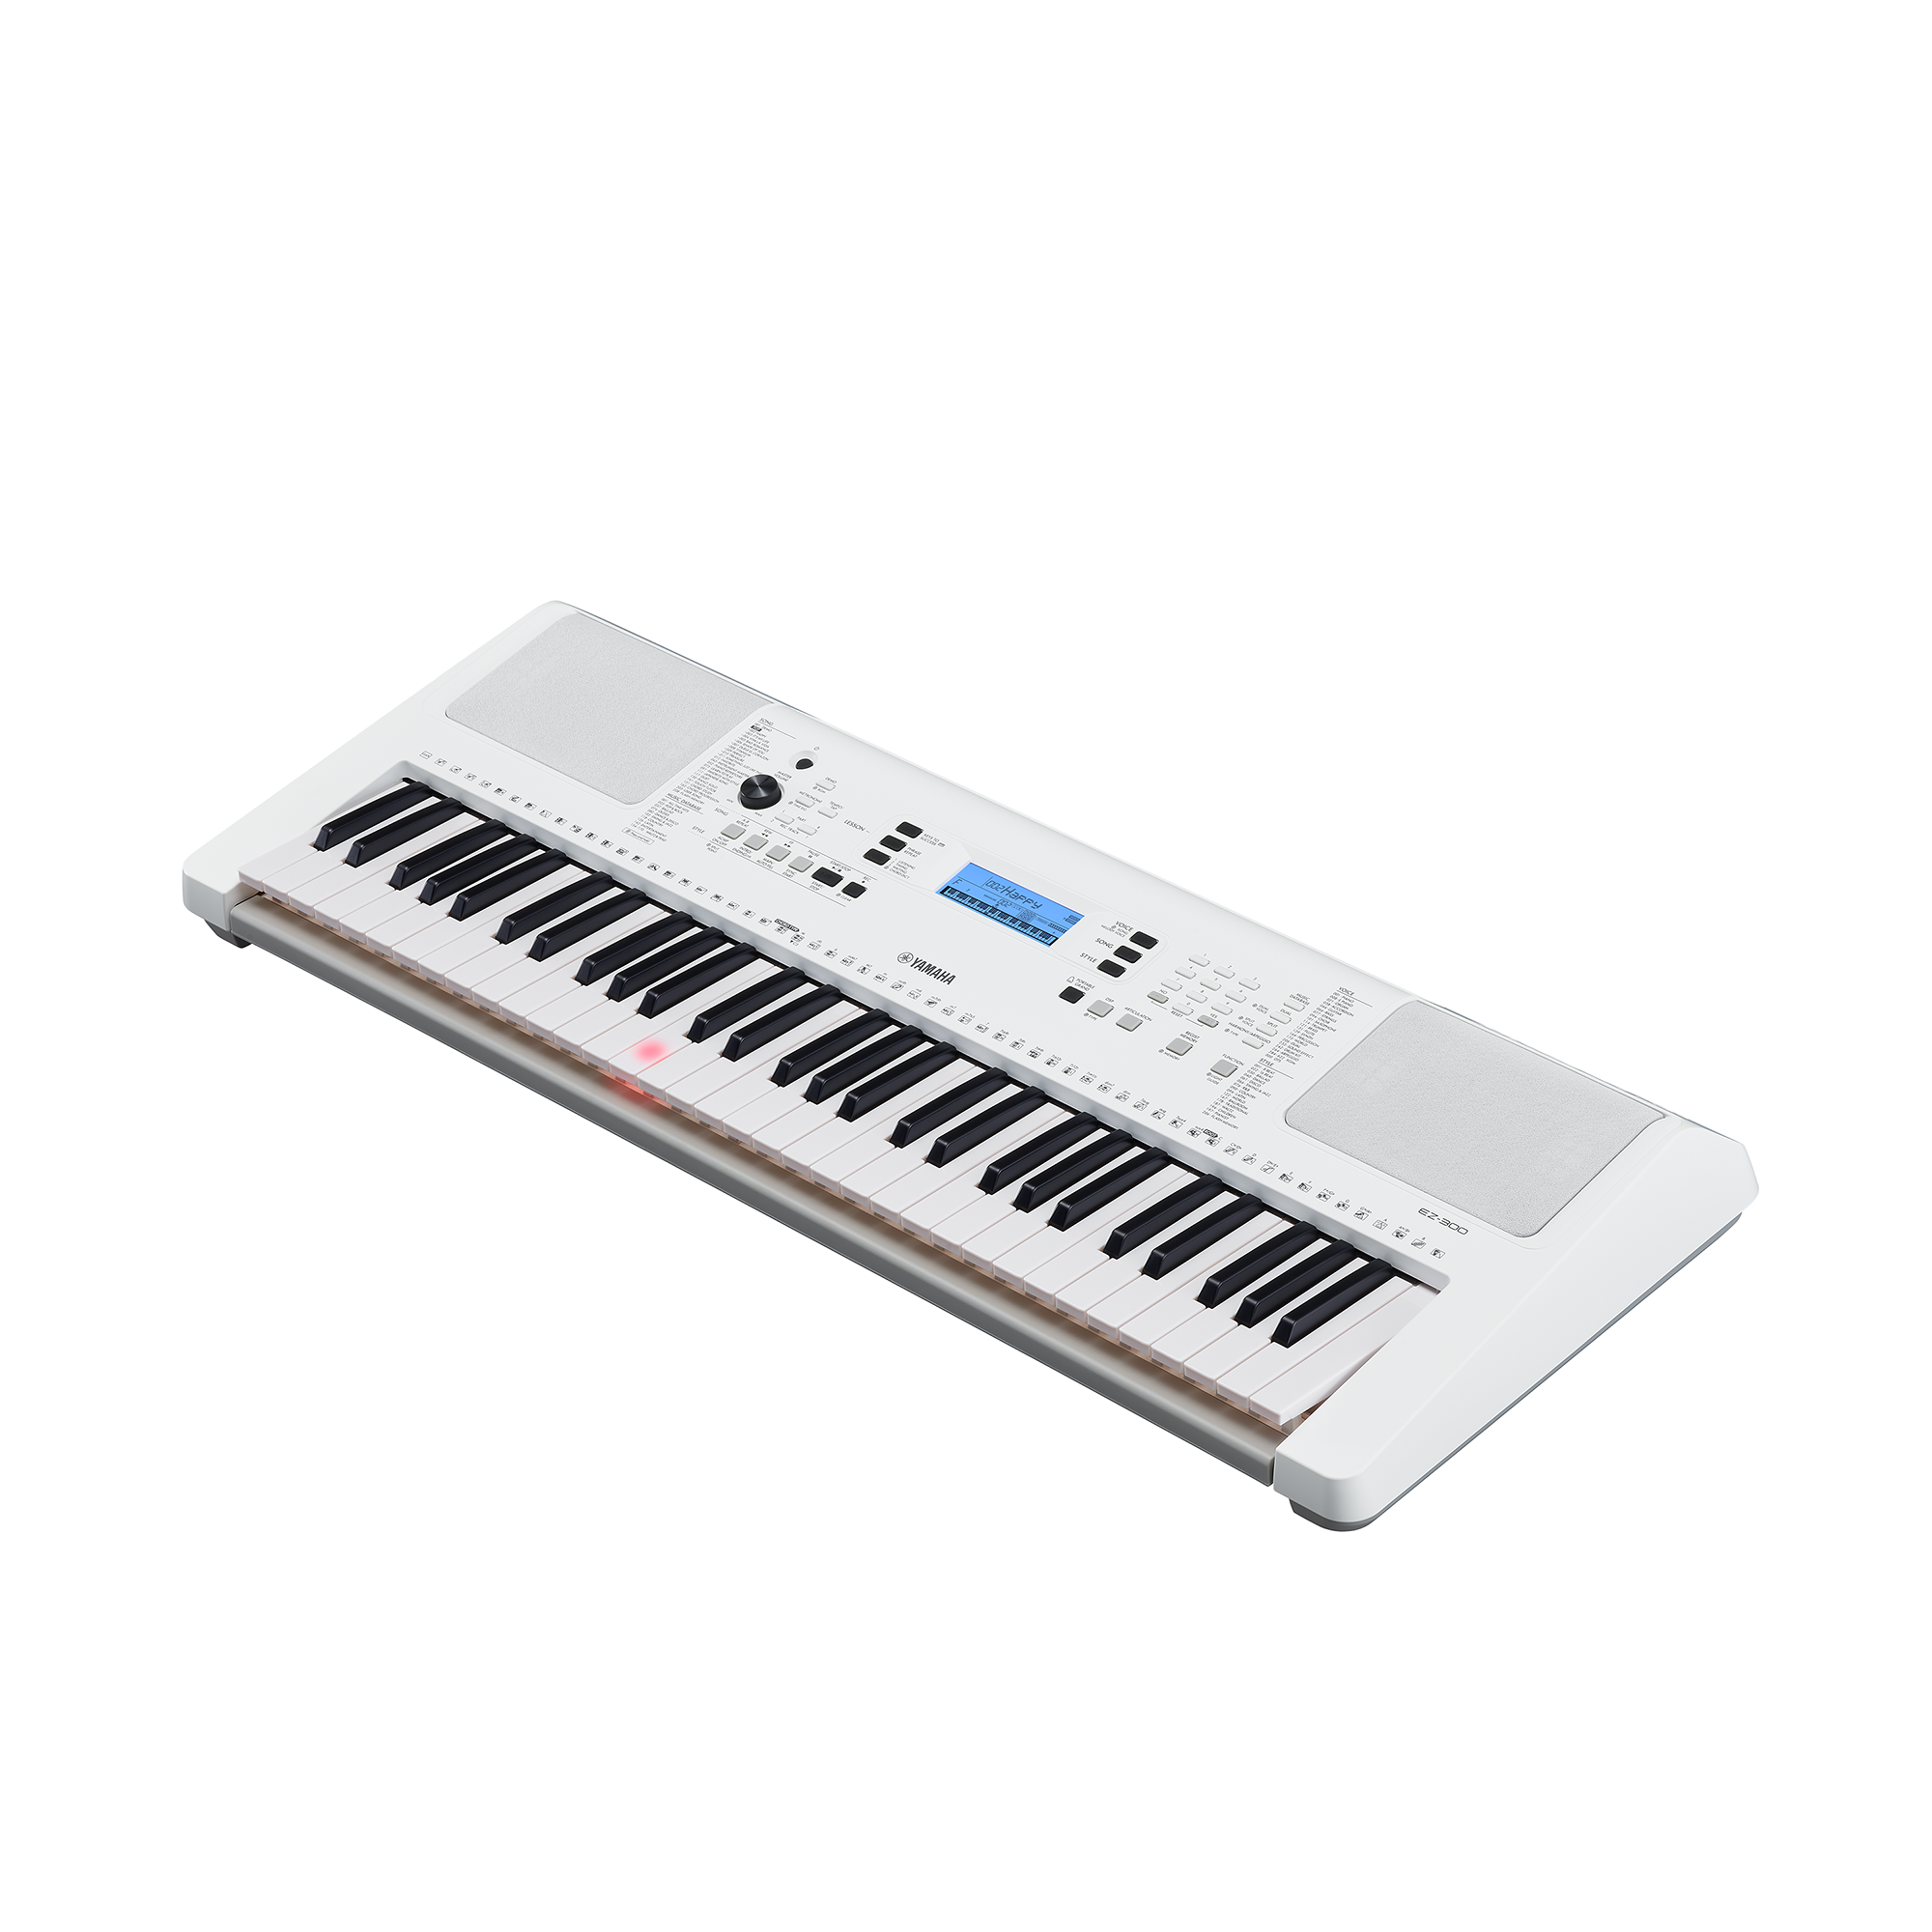 EZ-300 - 概述- 手提電子琴- 鍵盤樂器- 樂器- 產品- Yamaha - 台灣